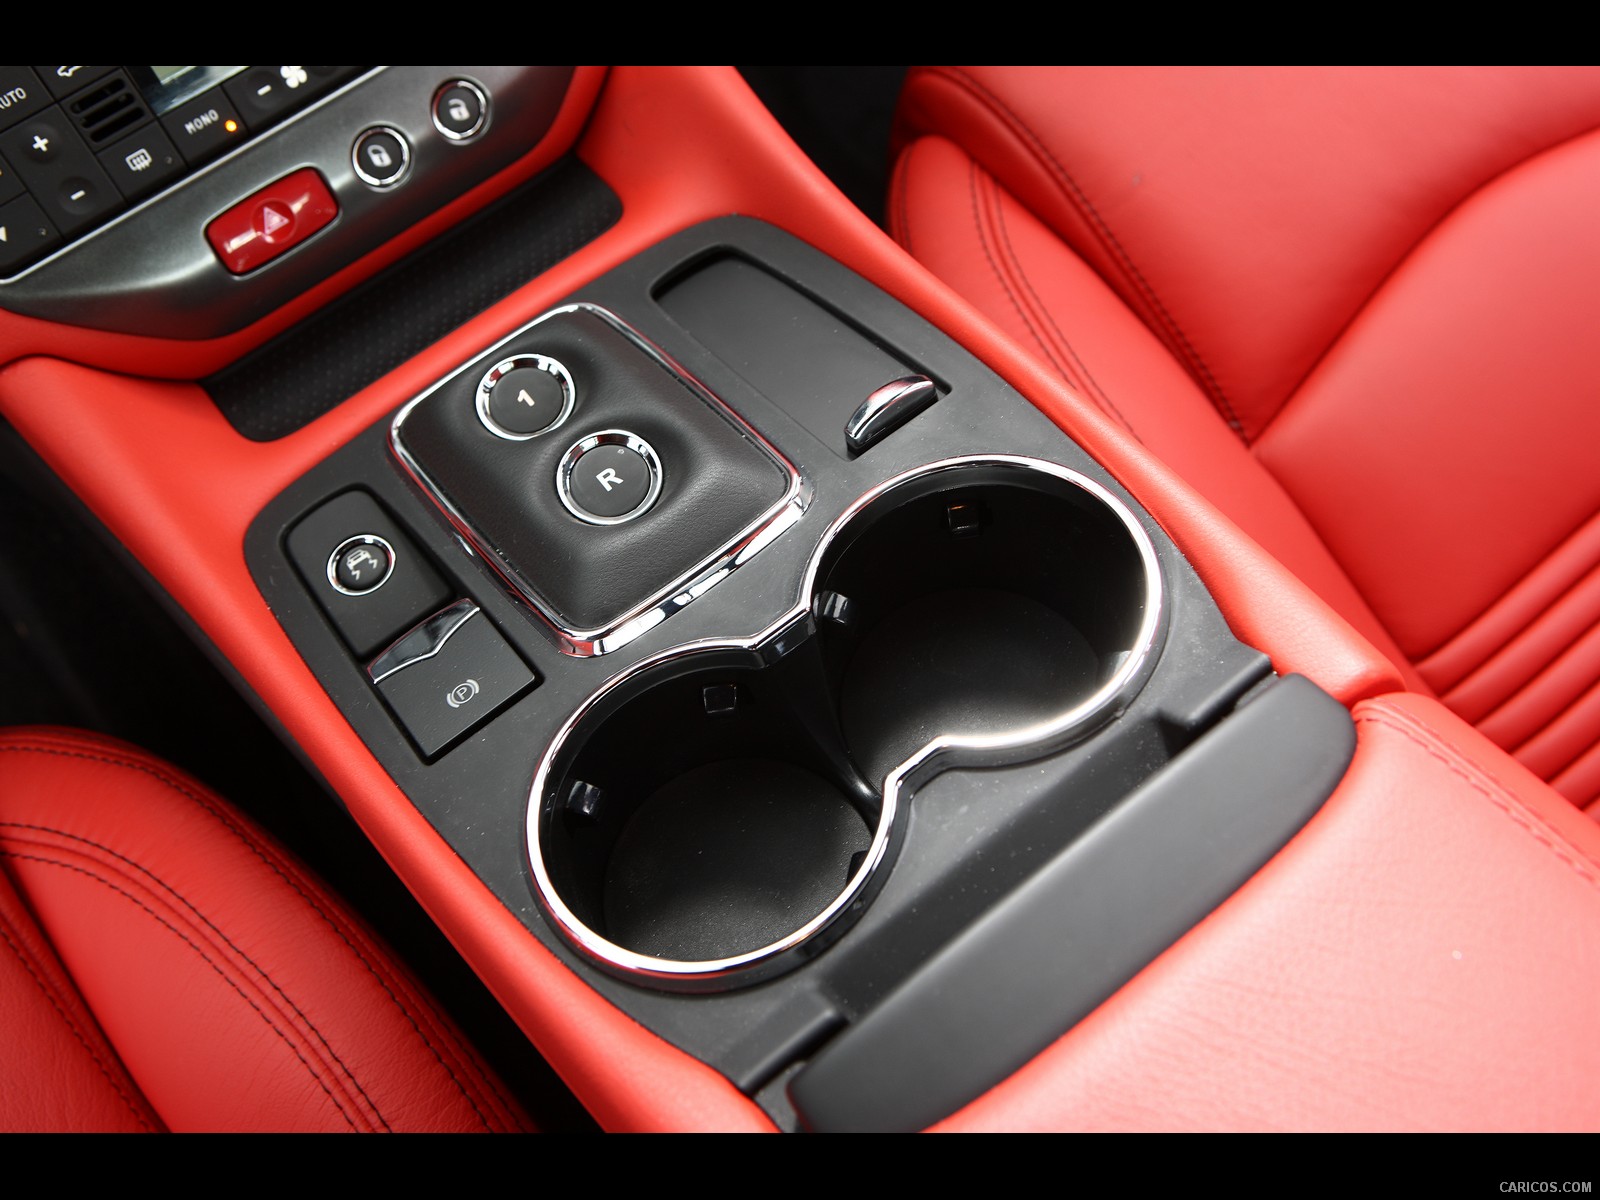 Maserati GranTurismo S (2009)  - Interior, Close-up, #28 of 40